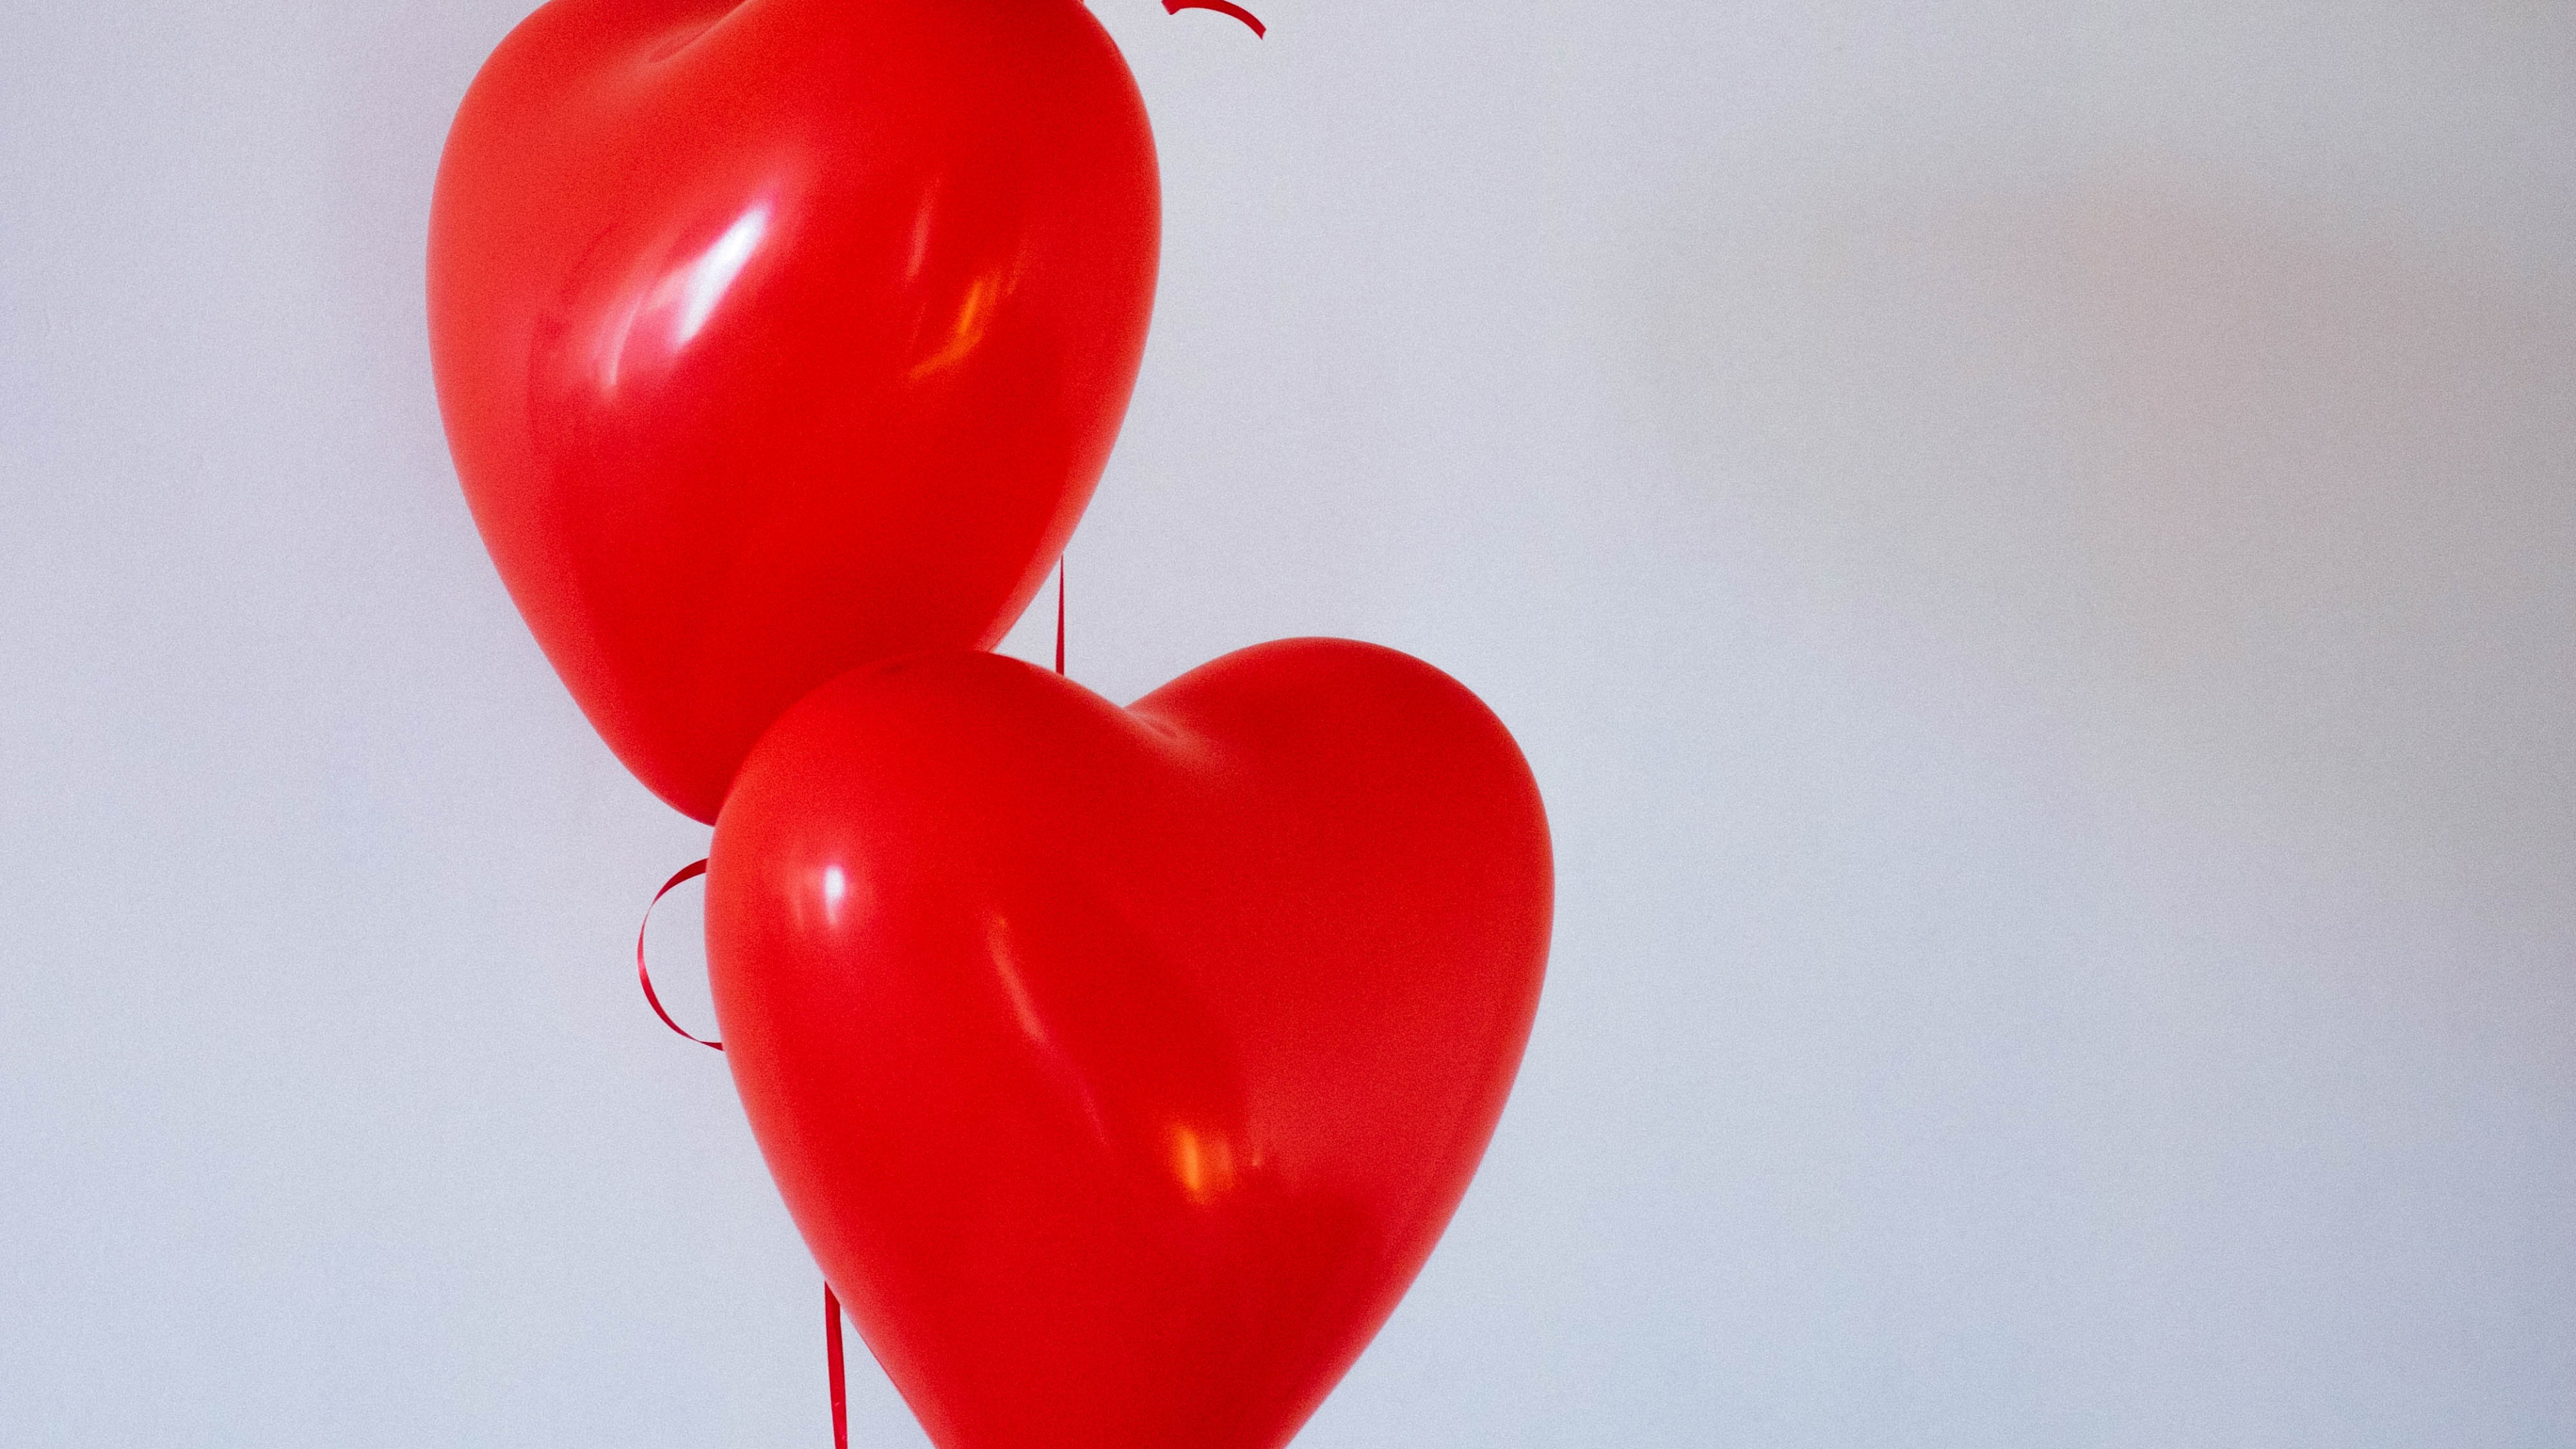 Ballon, Valentines Tag, Herzen, Organ, Liebe. Wallpaper in 3840x2160 Resolution